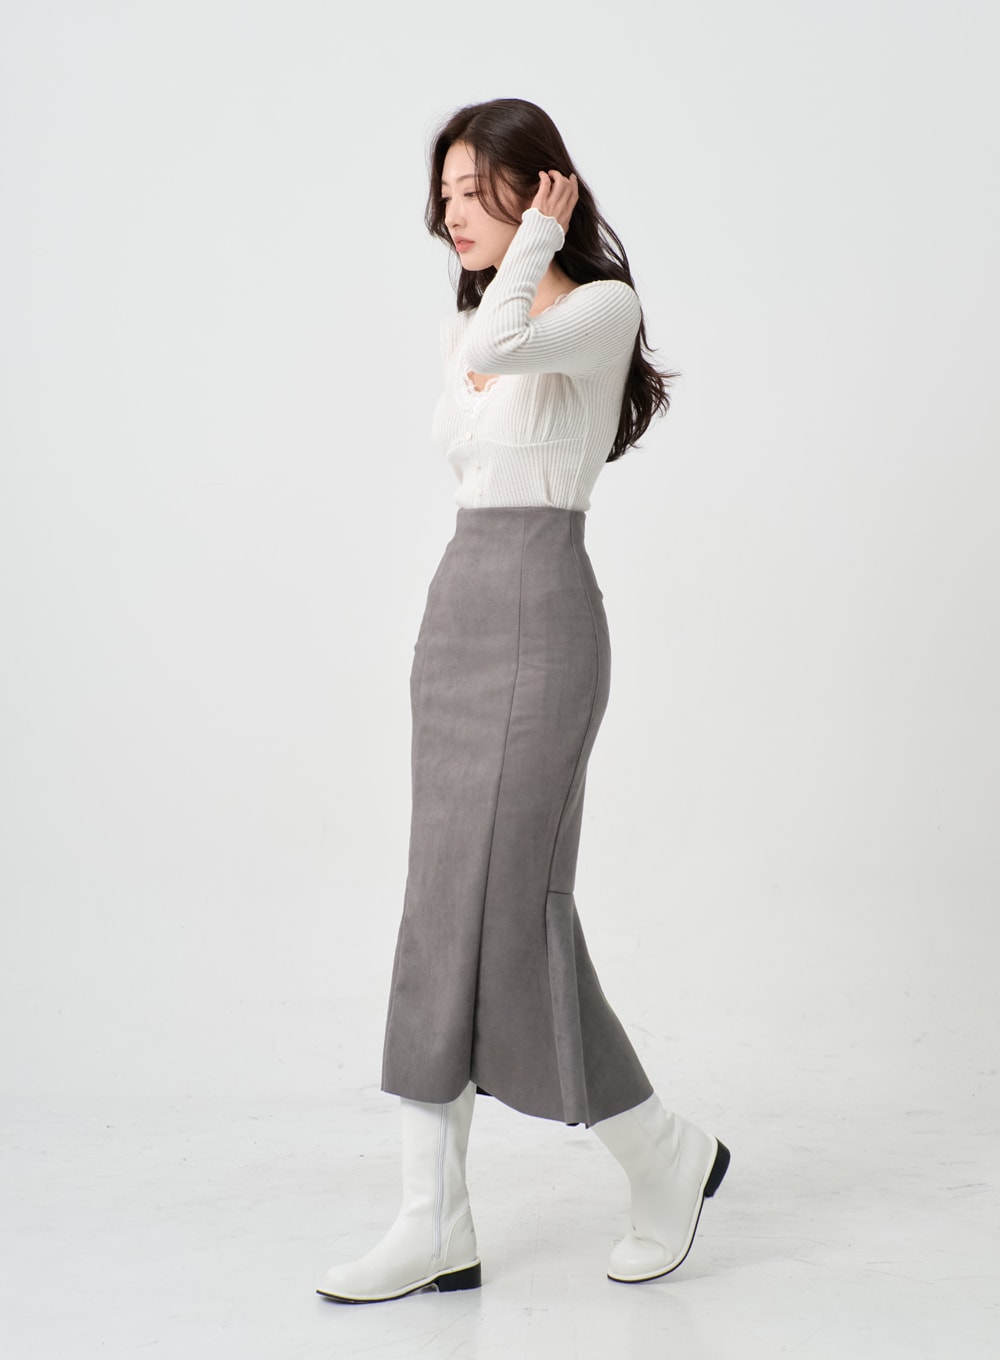 Simple Mermaid Long Skirt IO12